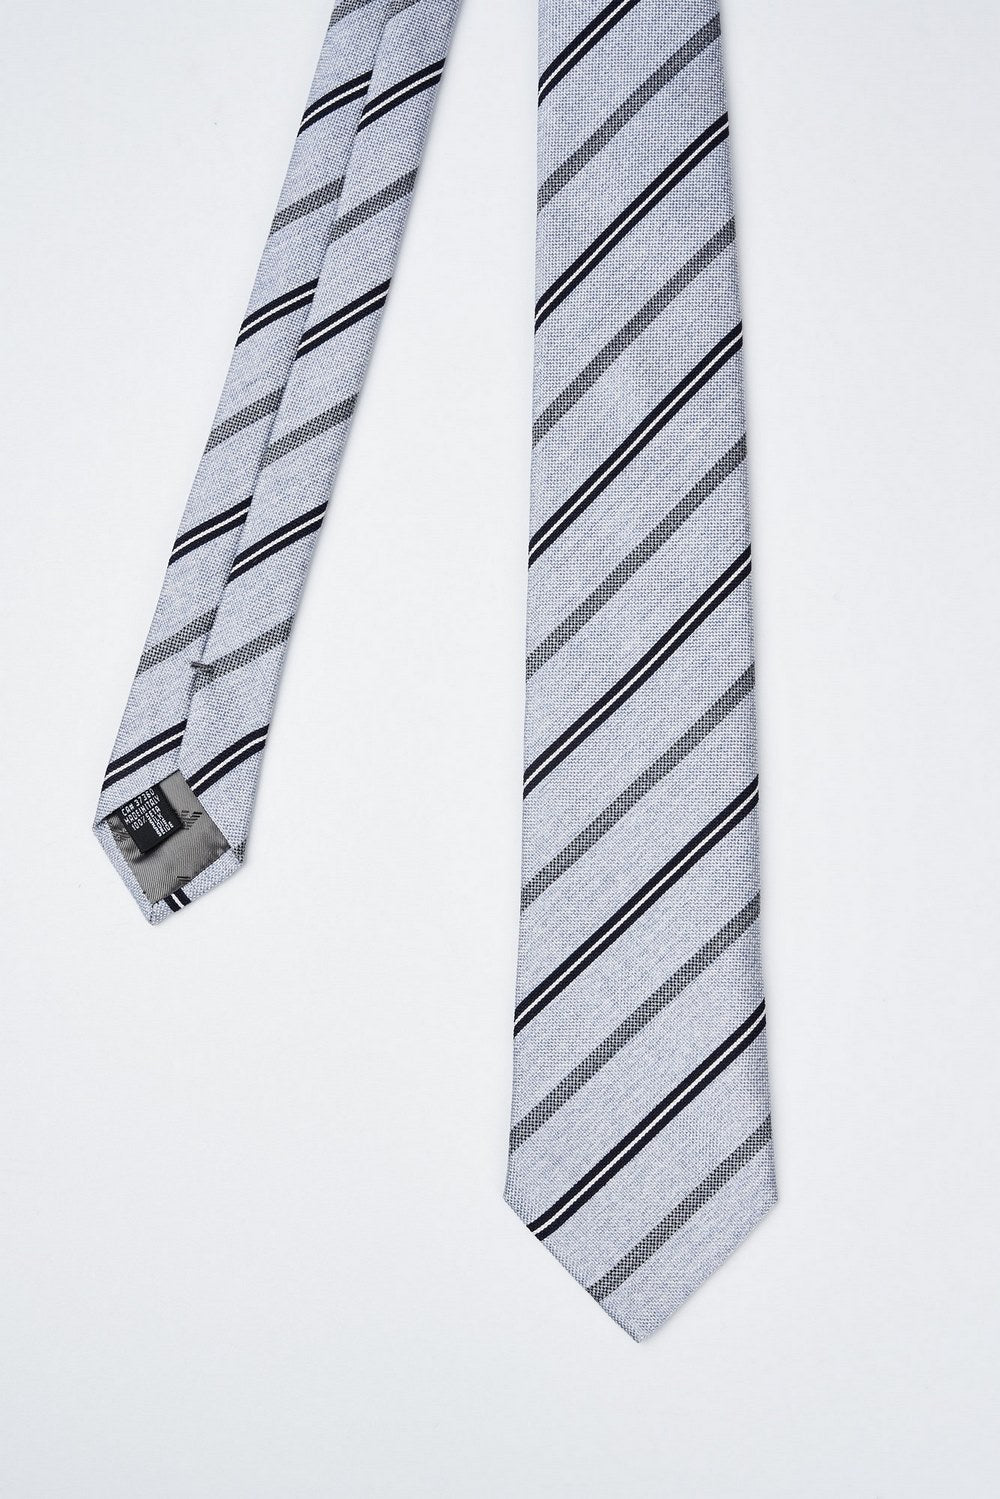 Gestreifte Krawatte aus reiner Jacquard-Seide-2